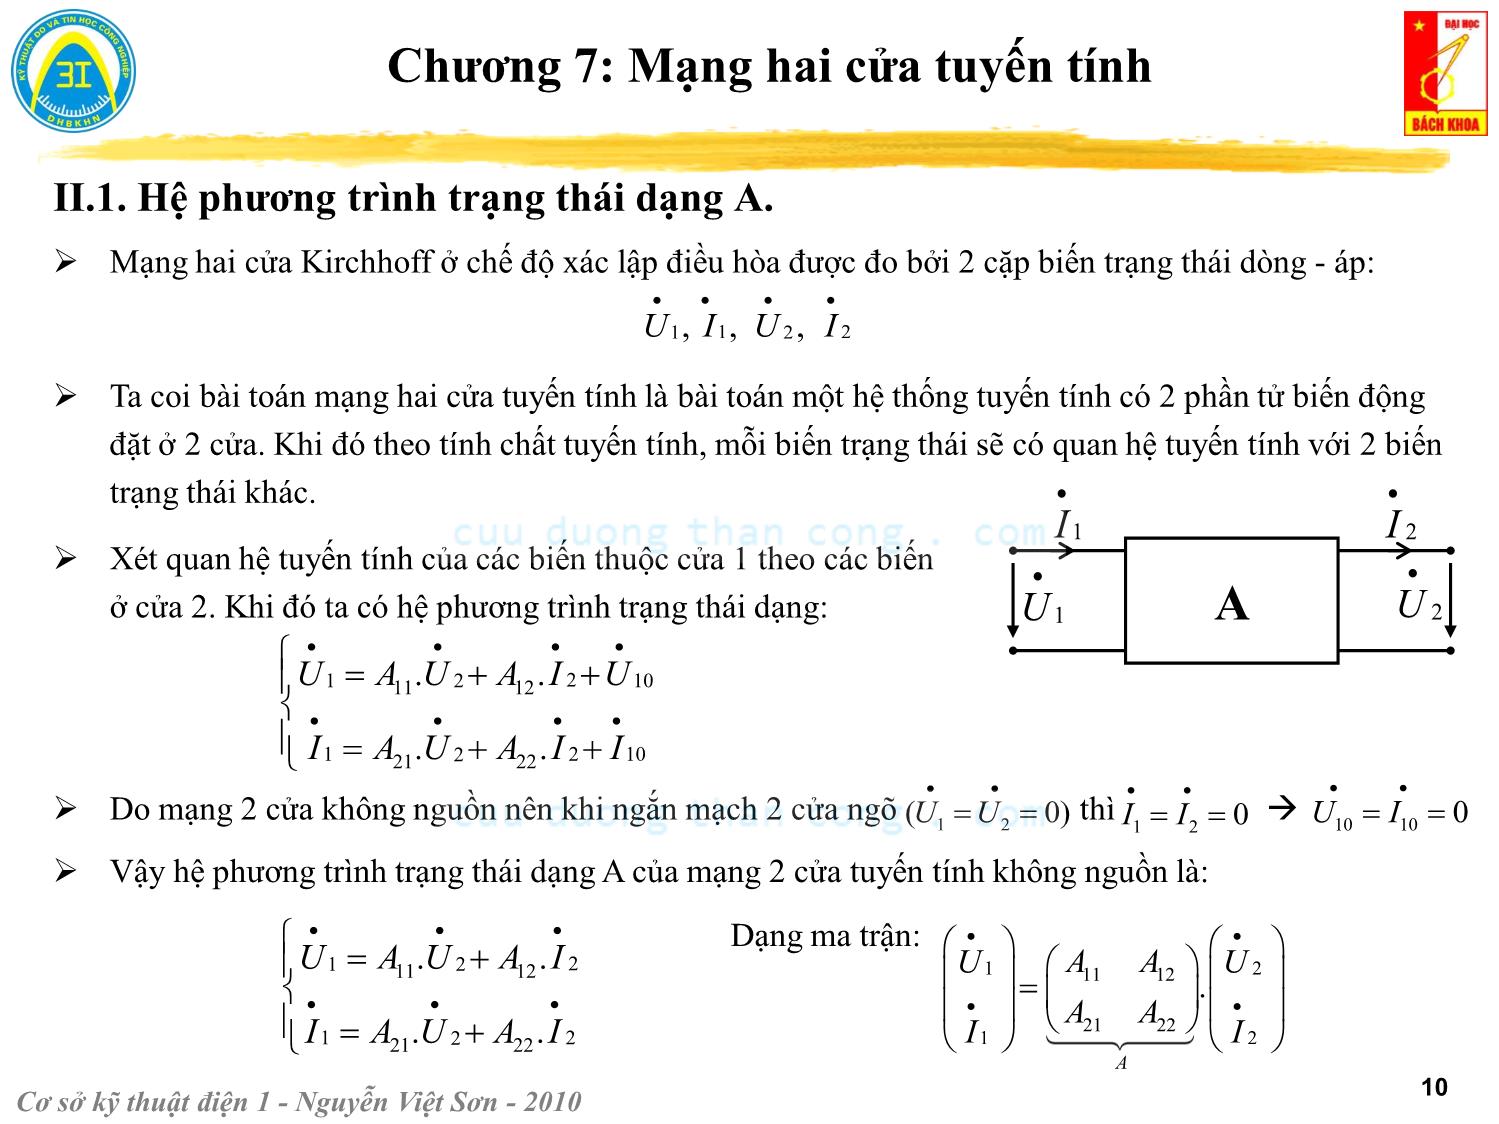 Bài giảng Kỹ thuật điện 1 - Chương 7: Mạng hai cửa tuyến tính - Nguyễn Việt Sơn trang 10